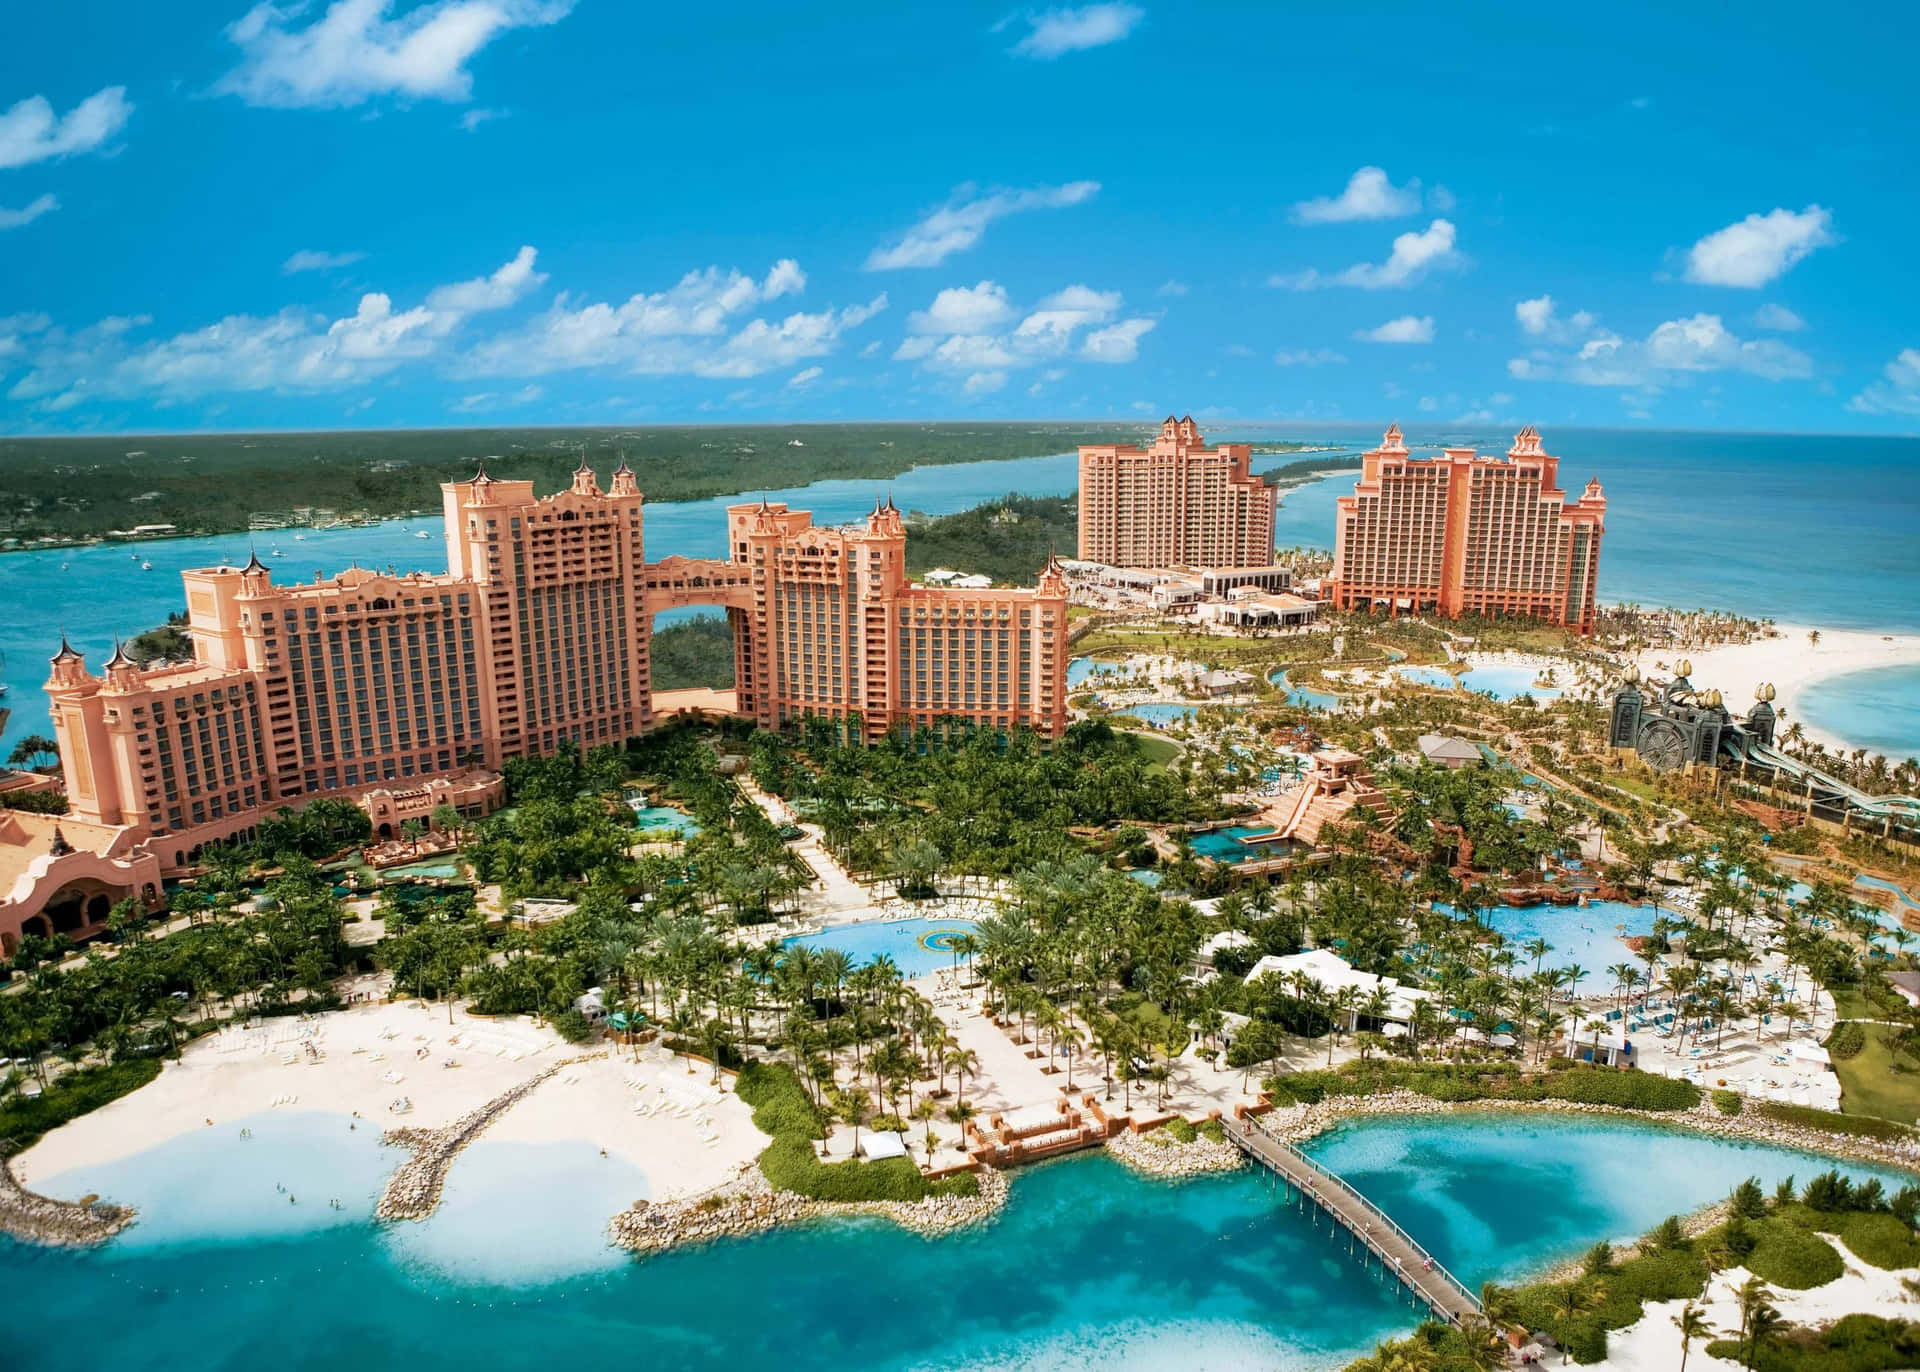 Top View Of The Atlantis Resort Wallpaper